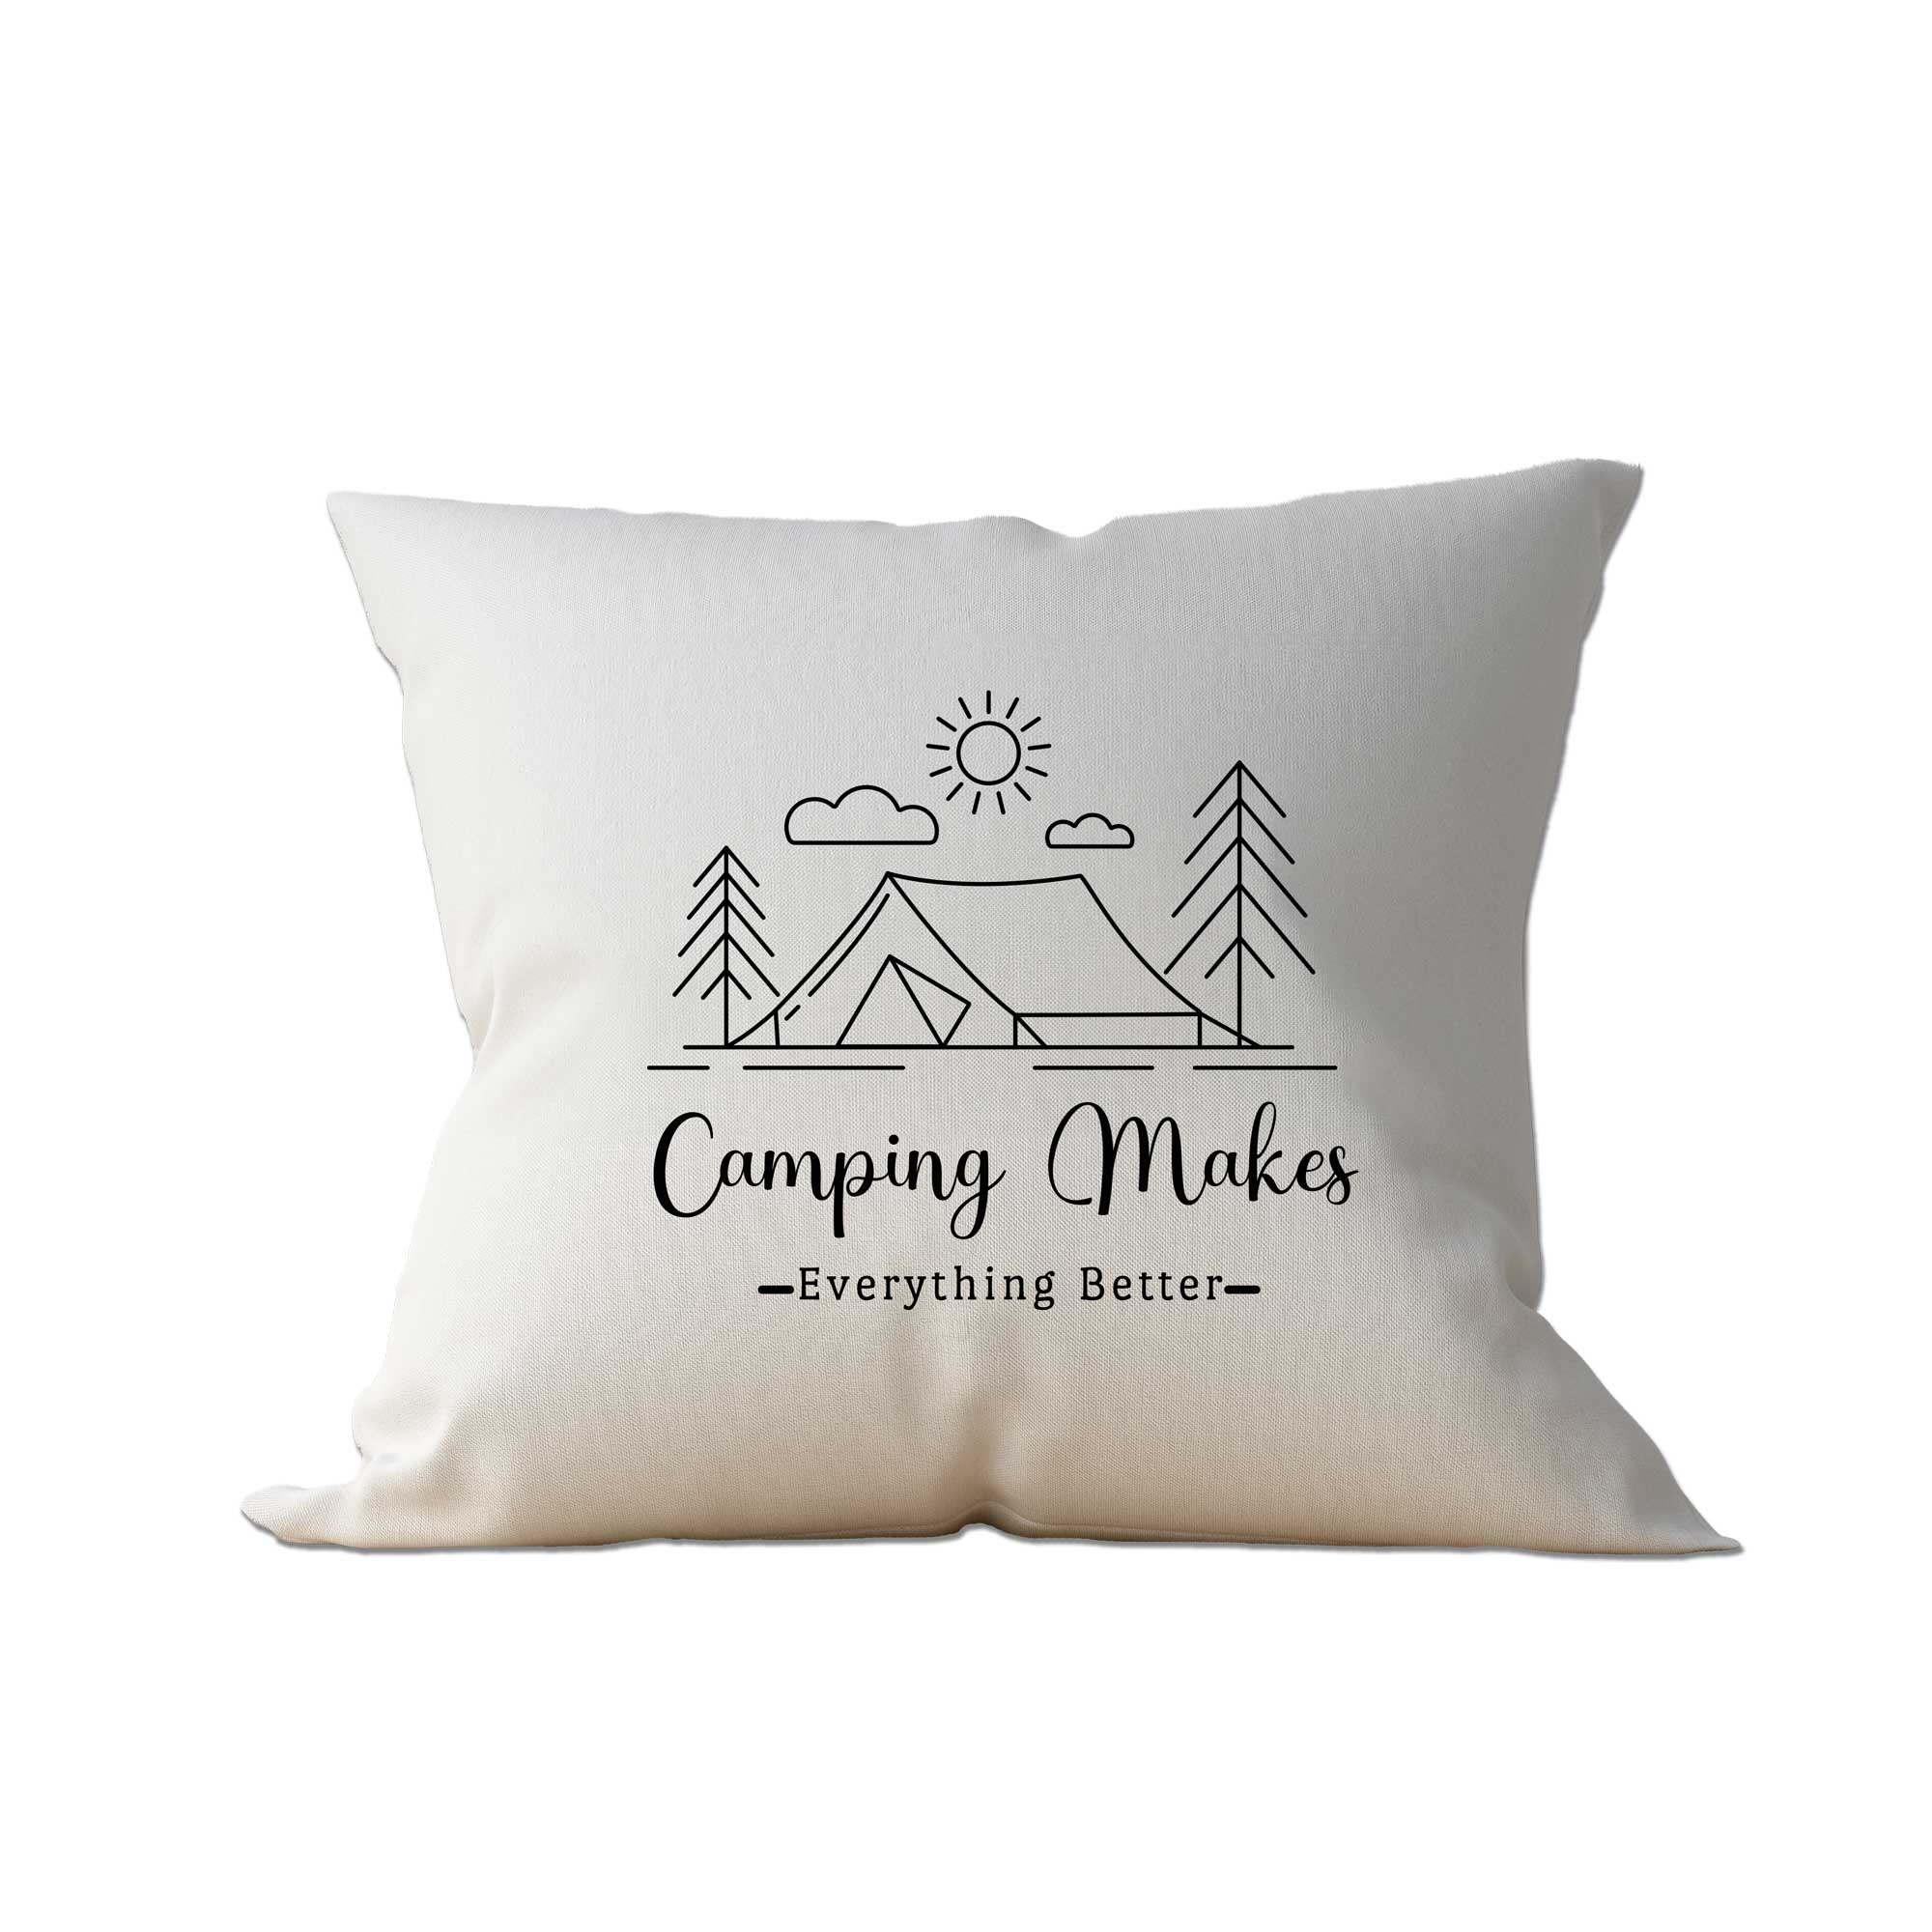 Campingkissen mit dem Schriftzug Camping makes - everything better -  und dem Bild von Zelt, Sonne Wolken und 2 Tannen